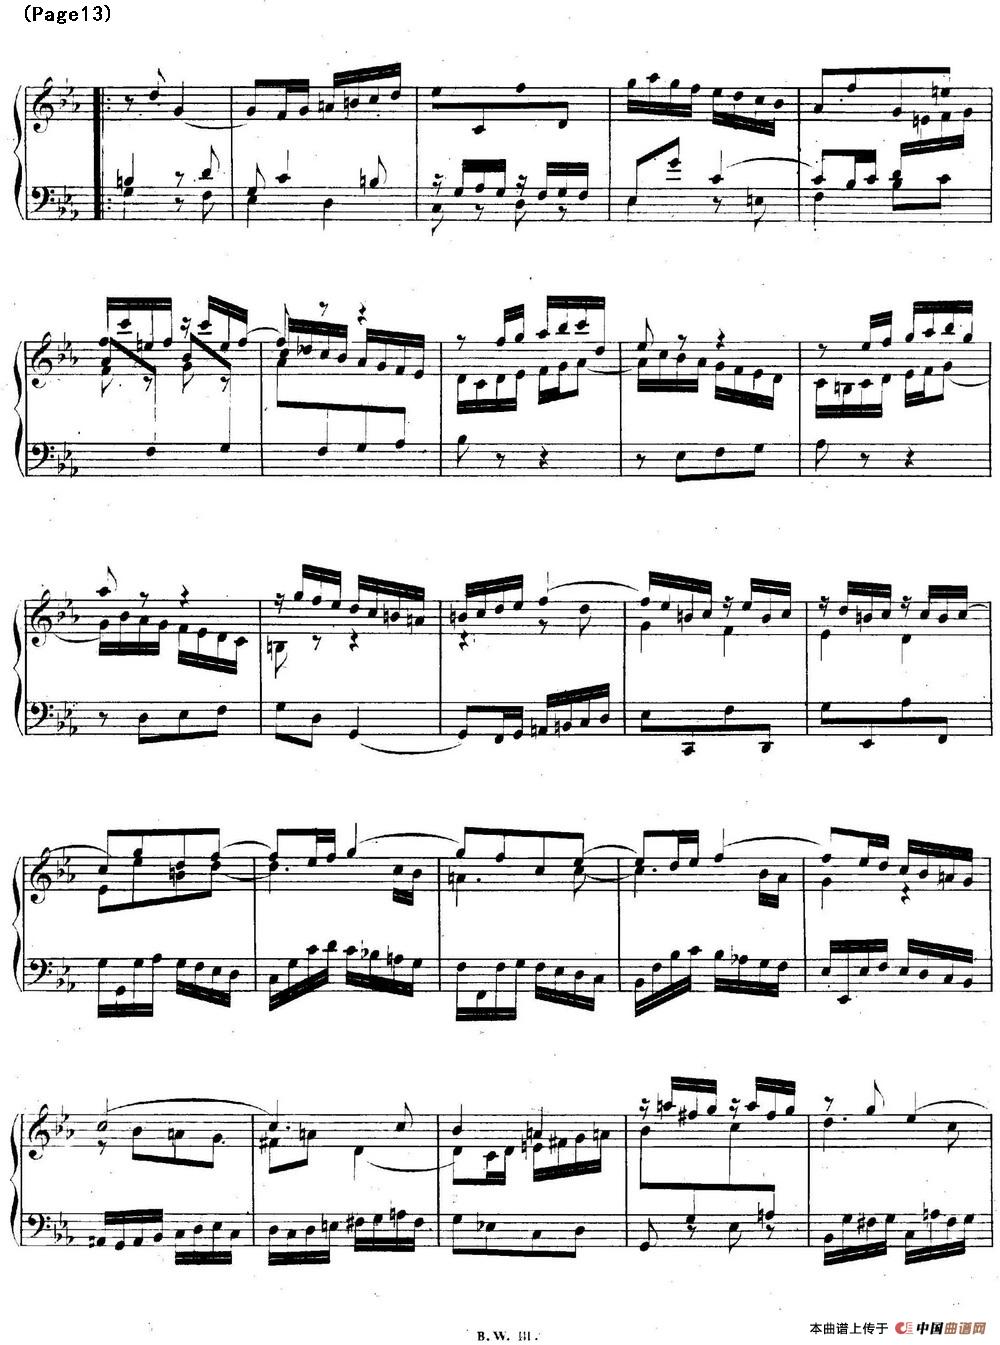 帕蒂塔6首德国组曲（No.2 c小调 巴赫 Partita c Minor BWV 826）(1)_BWV0826_页面_13.jpg